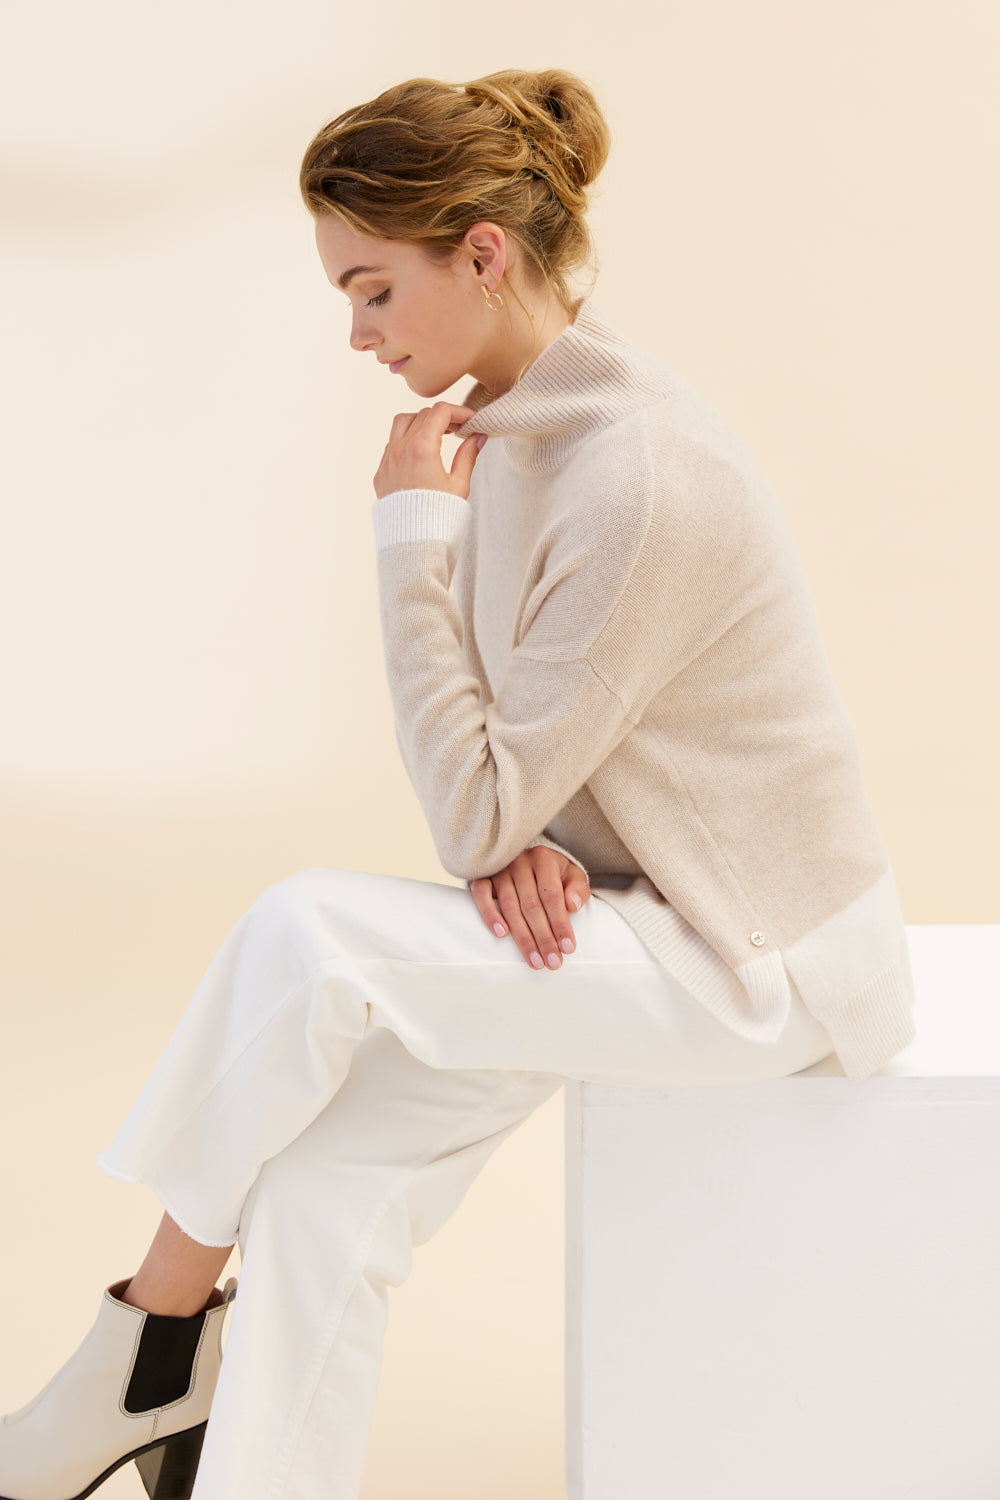 Tessa Cashmere Turtleneck Sweater - 100% Luxury Cashmere